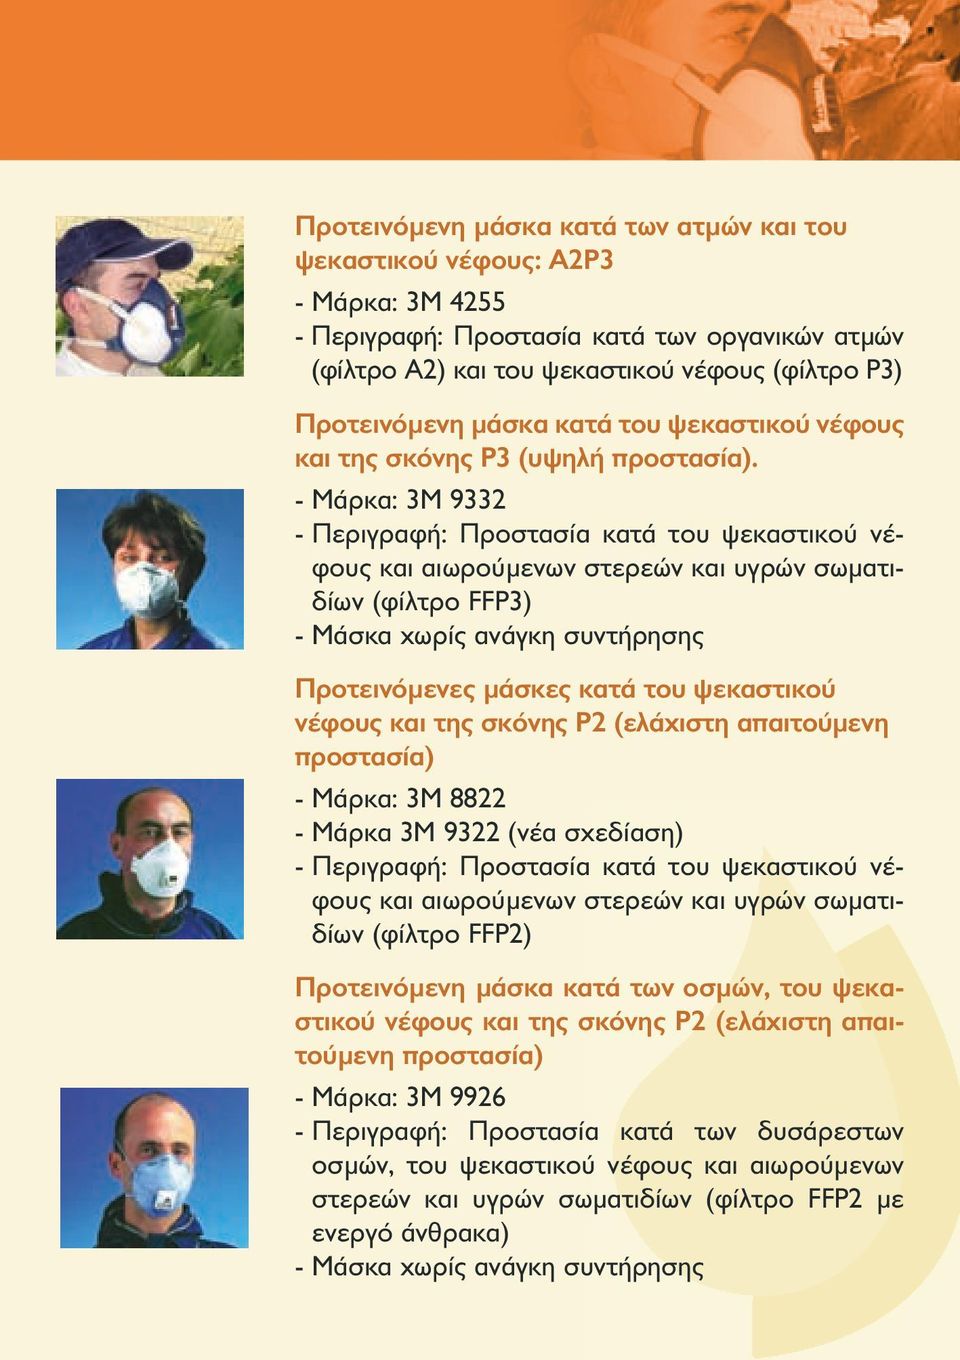 - Μάρκα: 3Μ 9332 - Περιγραφή: Προστασία κατά του ψεκαστικού νέφους και αιωρούμενων στερεών και υγρών σωματιδίων (φίλτρο FFP3) - Μάσκα χωρίς ανάγκη συντήρησης Προτεινόμενες μάσκες κατά του ψεκαστικού